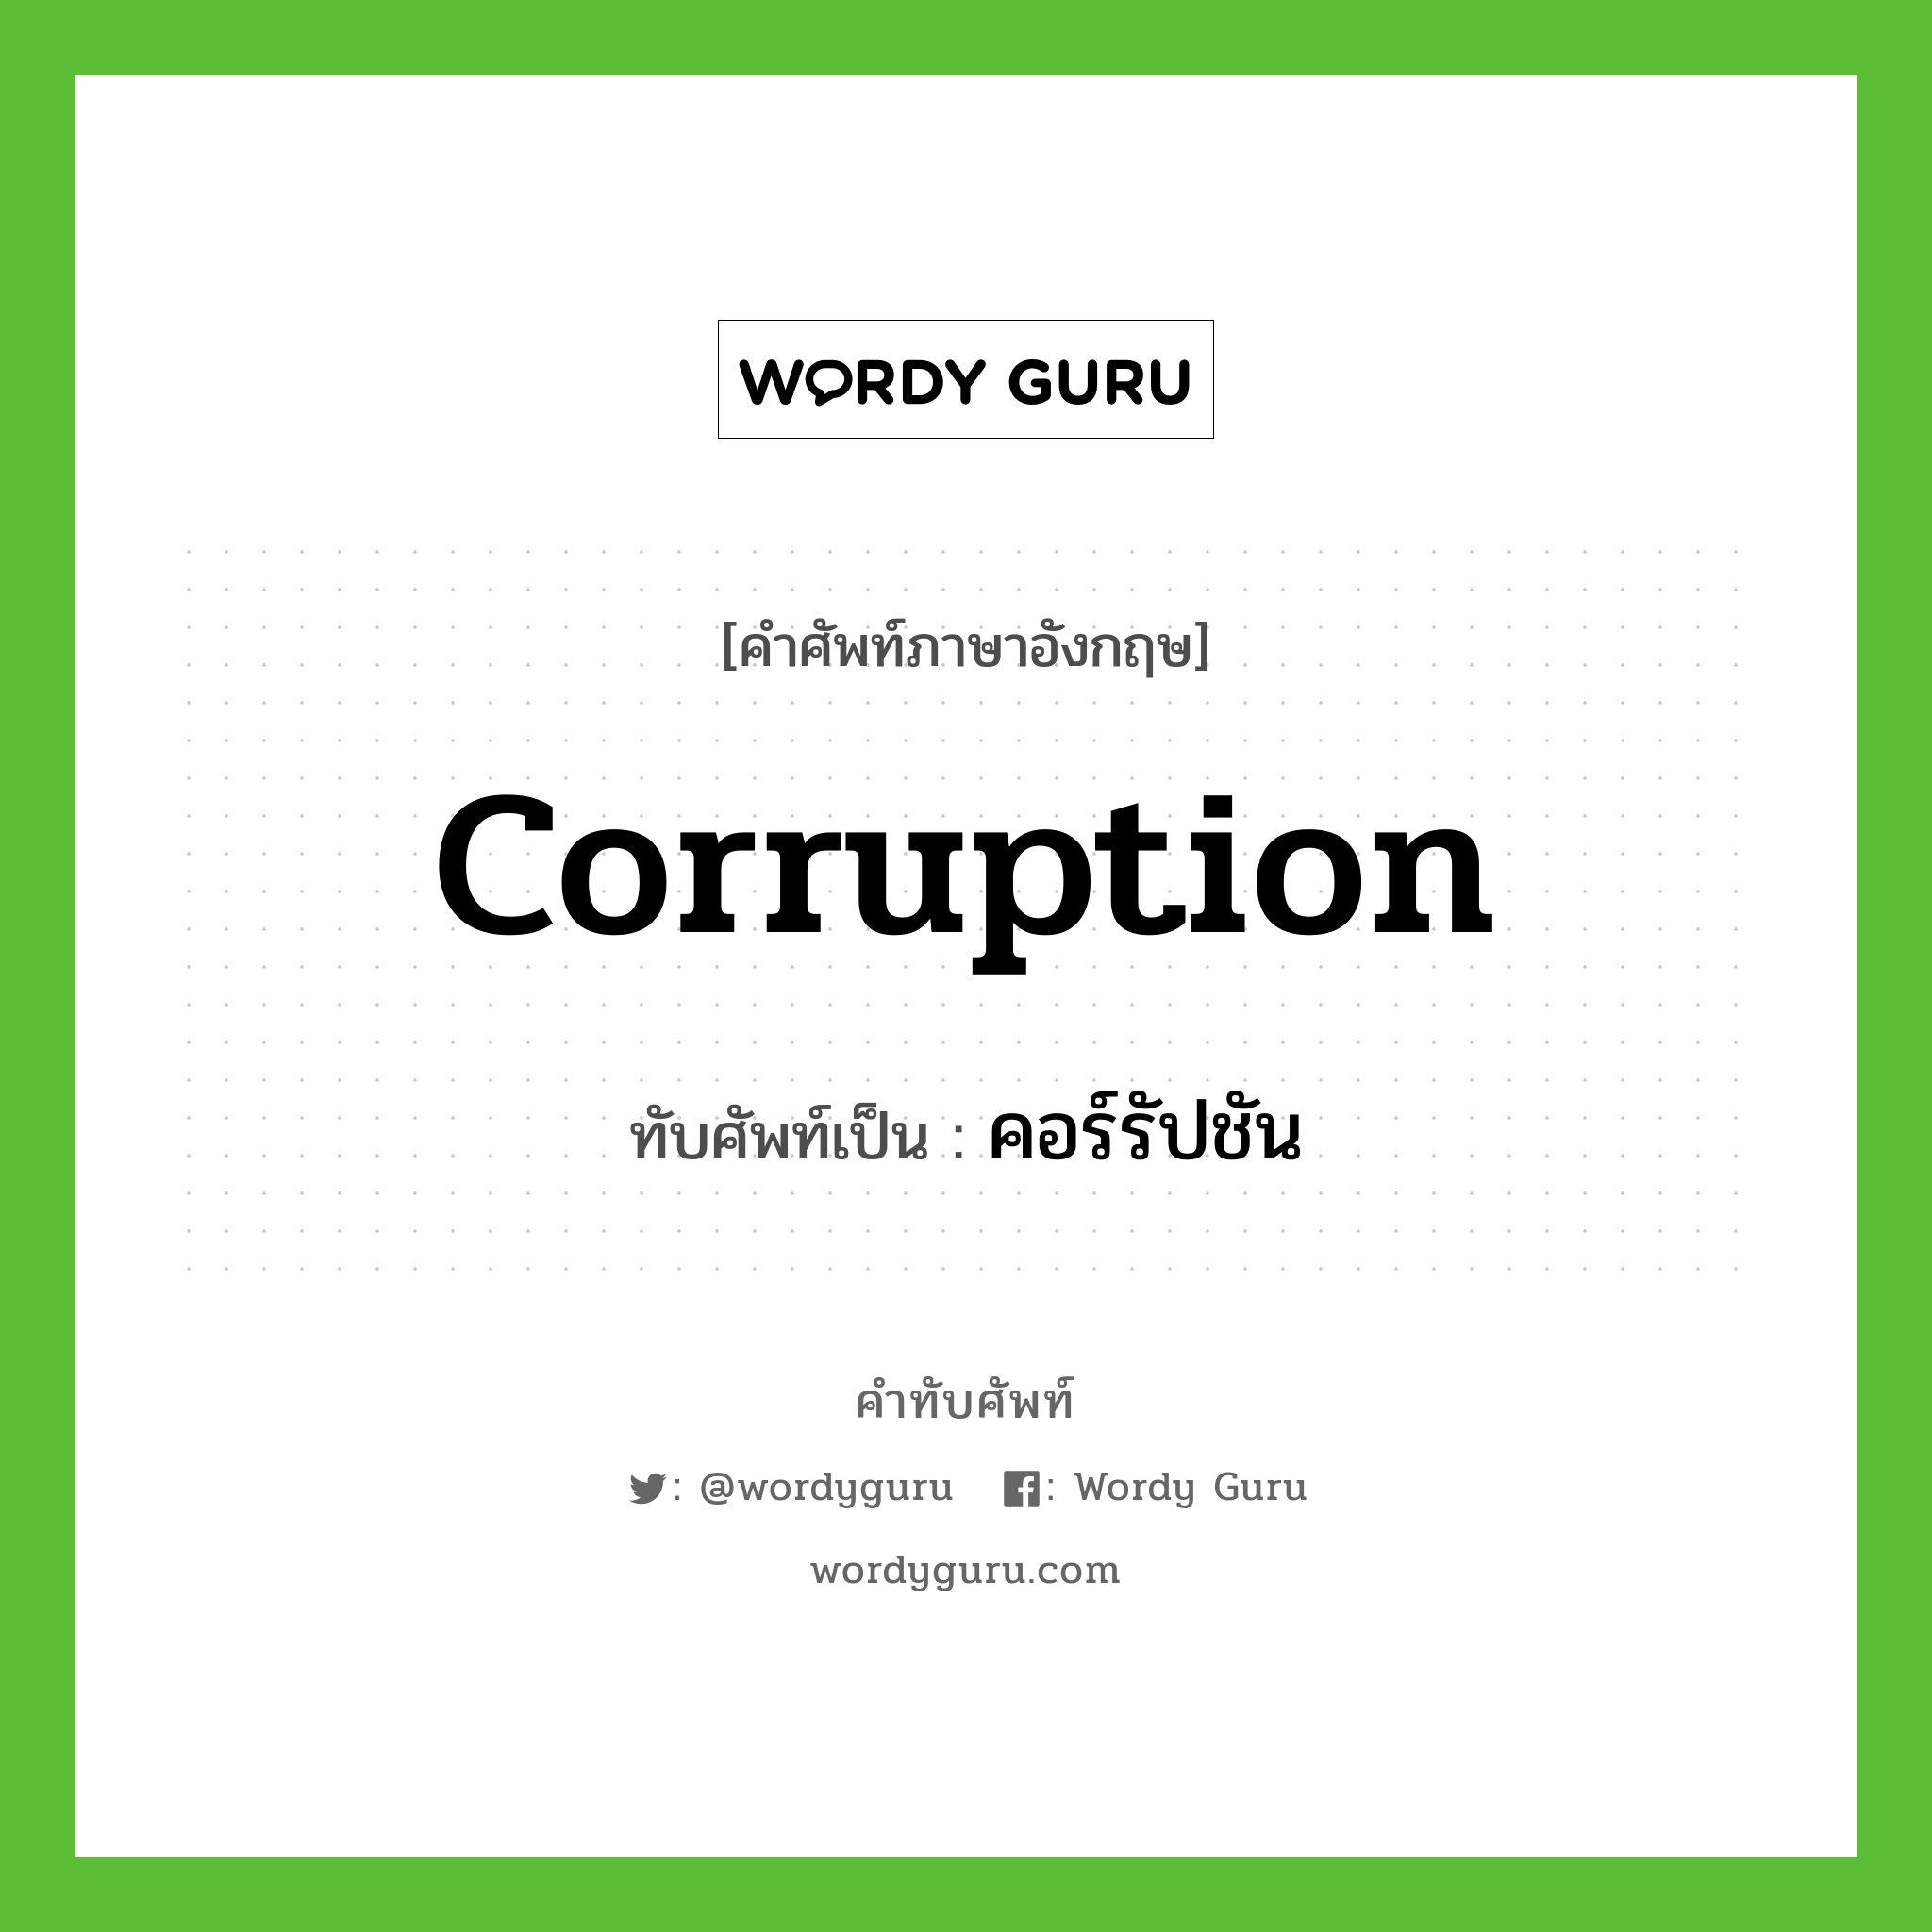 corruption เขียนเป็นคำไทยว่าอะไร?, คำศัพท์ภาษาอังกฤษ corruption ทับศัพท์เป็น คอร์รัปชัน